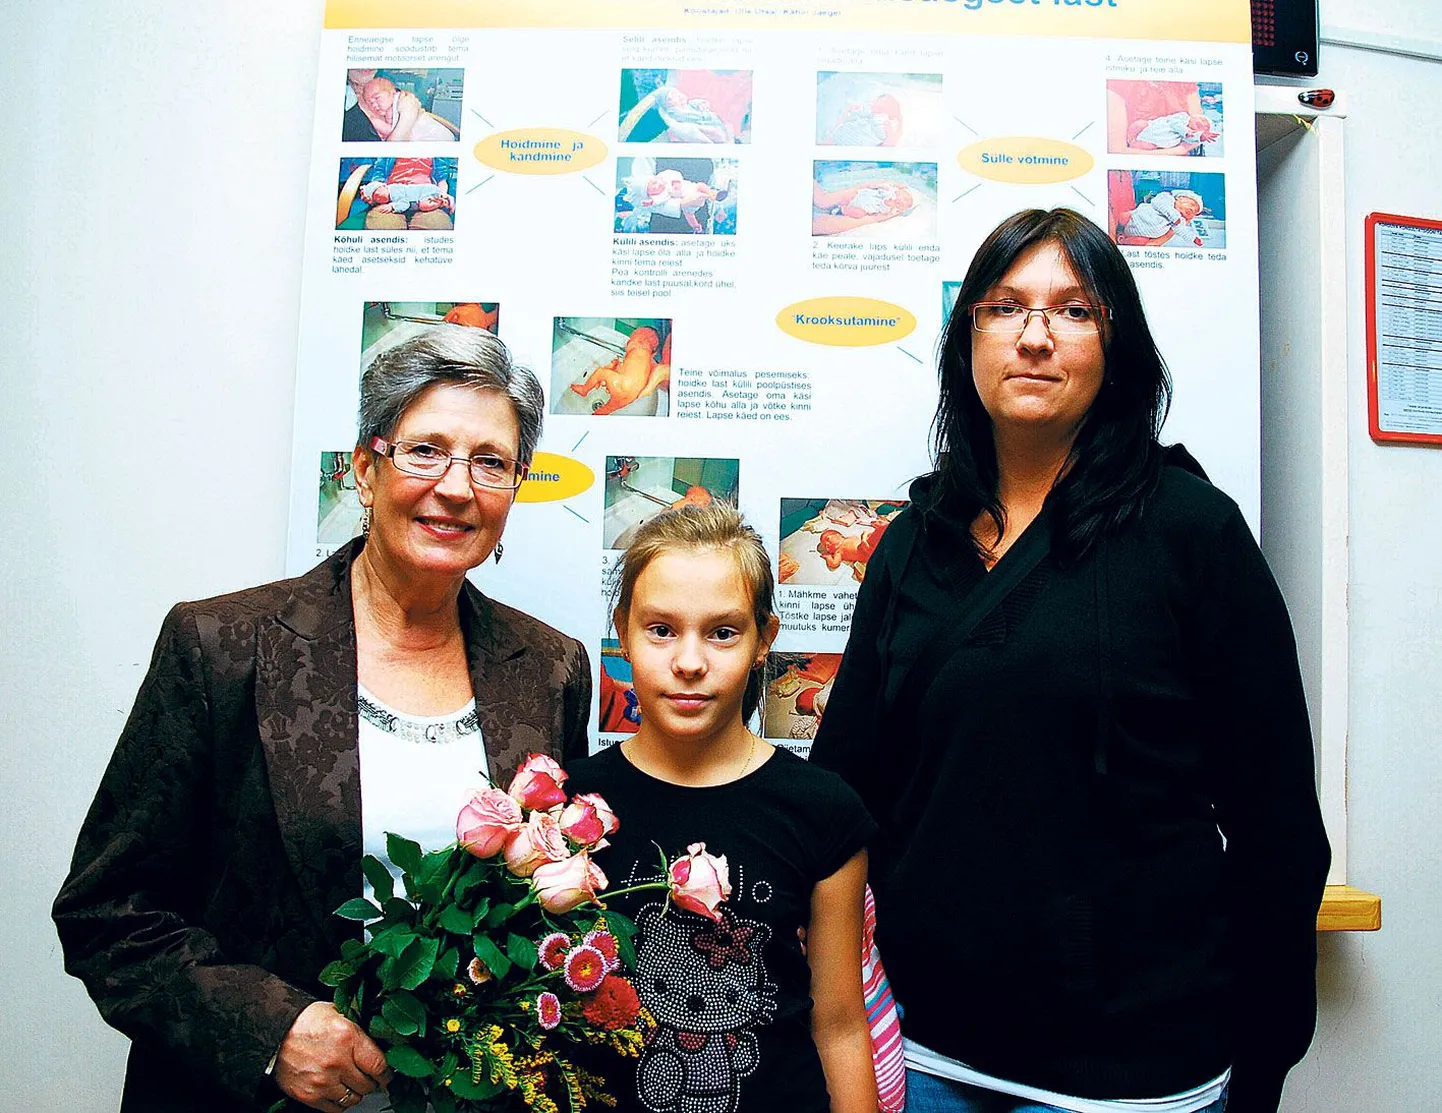 Kliinikumi vastsündinute osakonna asutamise juures viibinud arst Marja-Liis Mägi (vasakul) koos oma patsiendi Maria-Florenzia Kohleri ja ta ema Triinu Paemurruga.